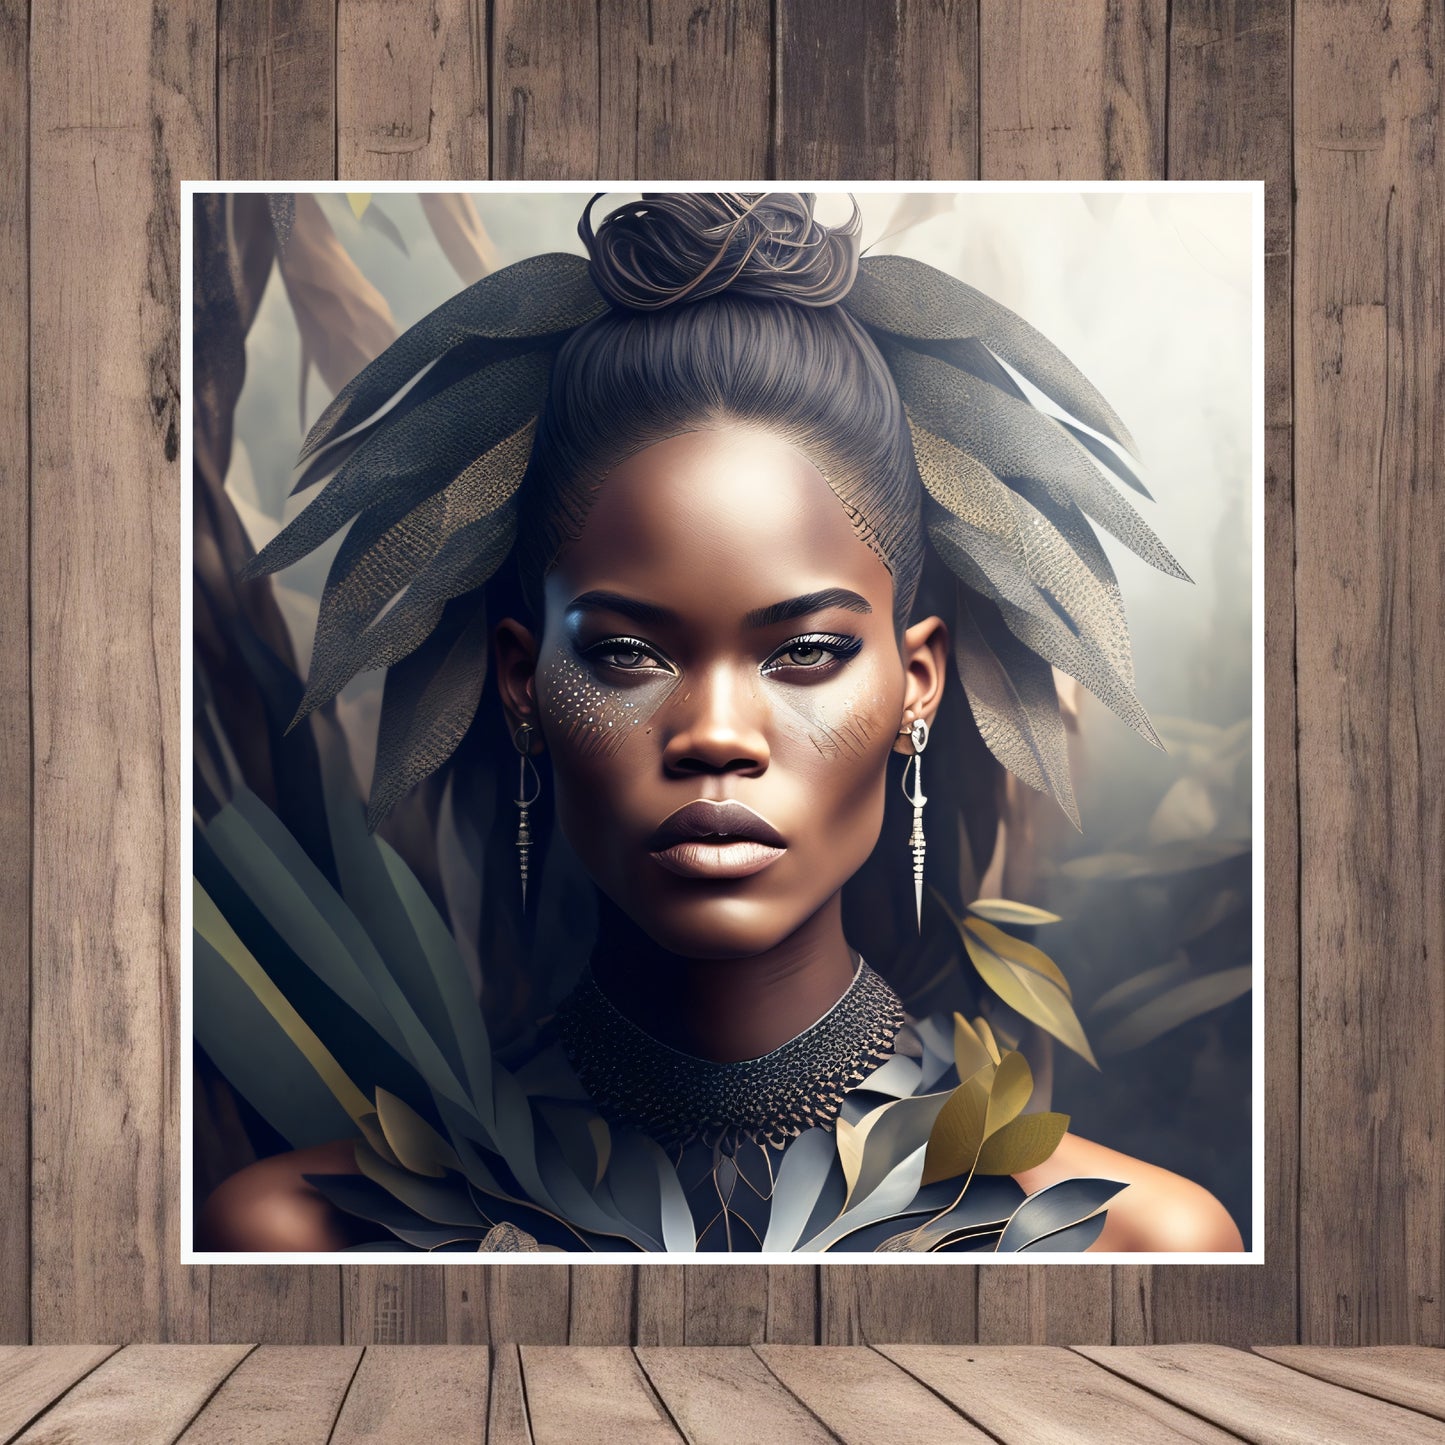 CyberPunk Black Girl Portrait Art Design sur papier mat premium Utilisation personnelle ou professionnelle Décoration spéciale Grande résolution 4